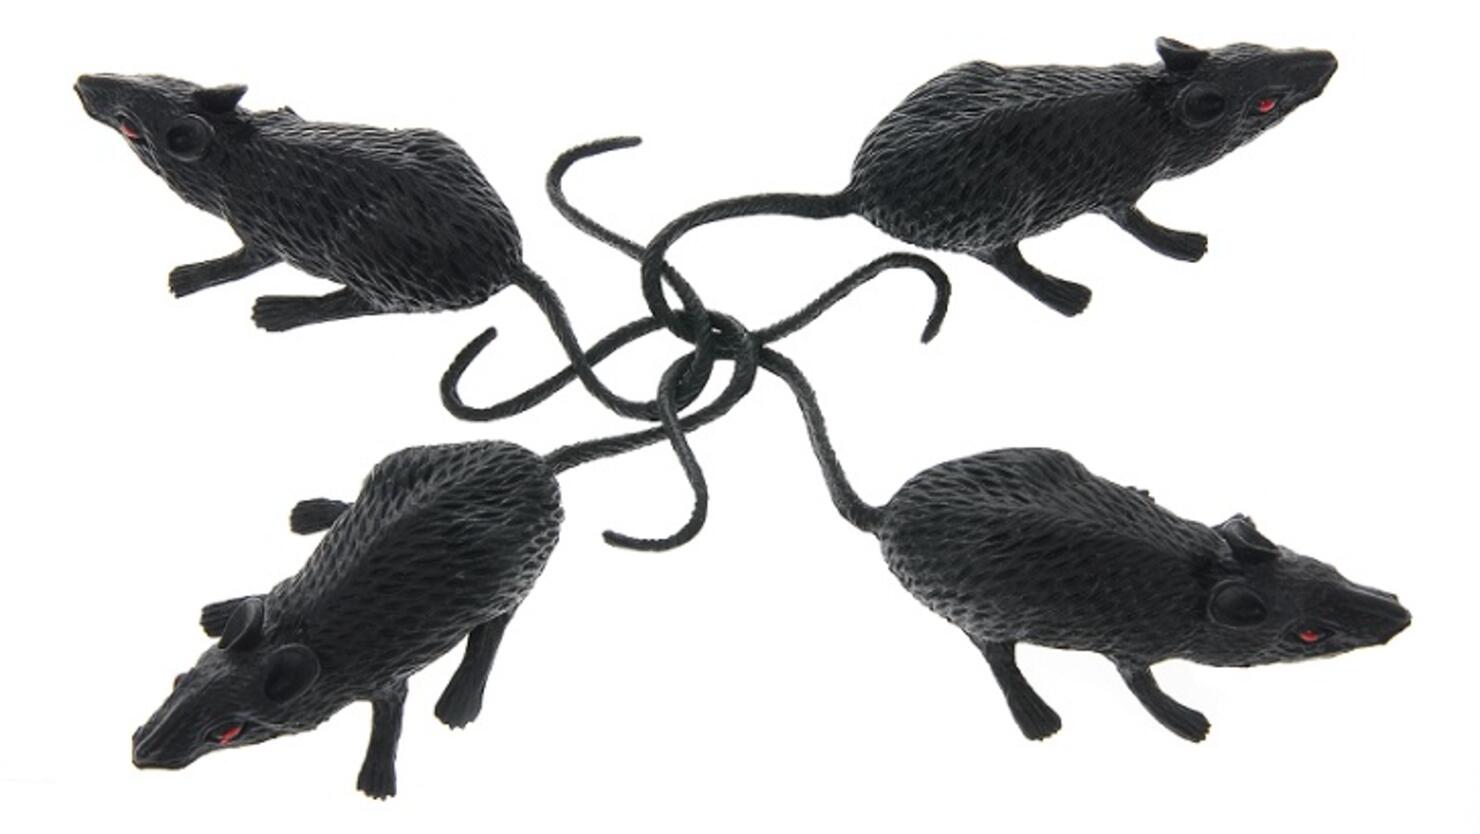 A Rat King'  Rat king, Rats, Deformed animals